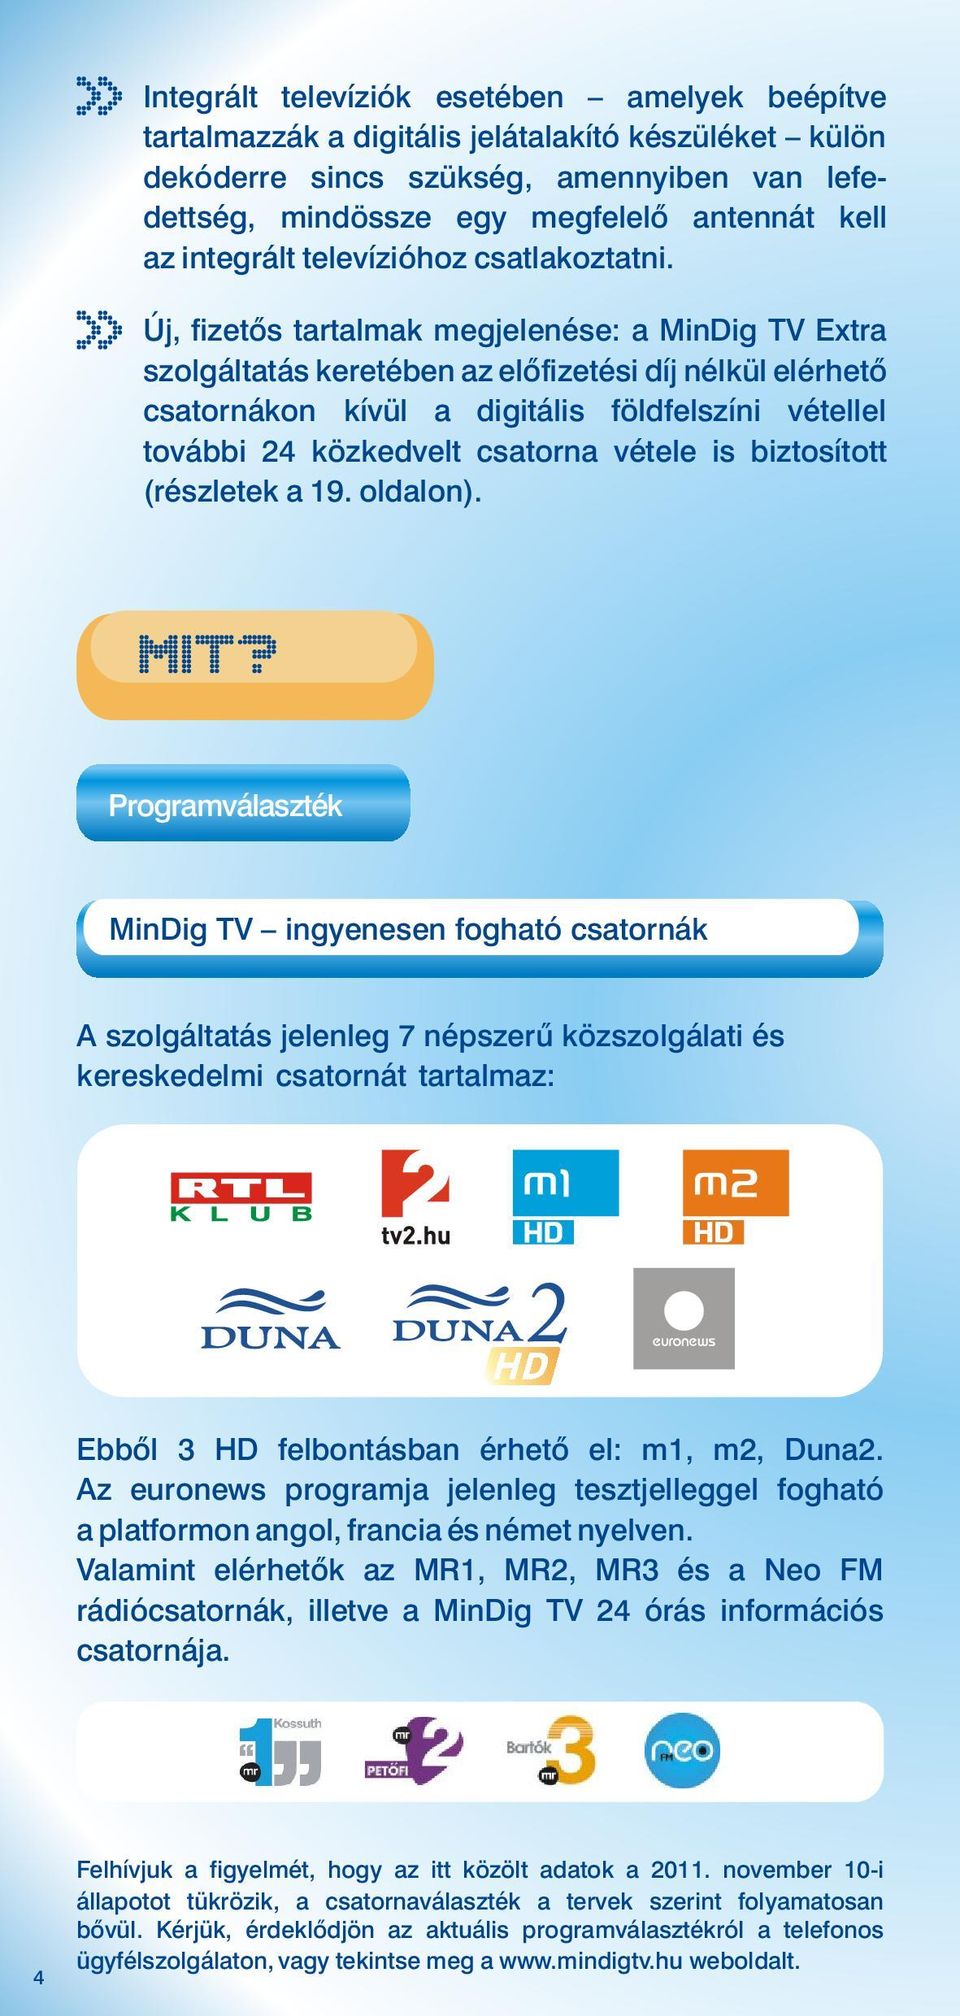 Új, fizetős tartalmak megjelenése: a MinDig TV Extra szolgáltatás keretében az előfizetési díj nélkül elérhető csatornákon kívül a digitális földfelszíni vétellel további 24 közkedvelt csatorna